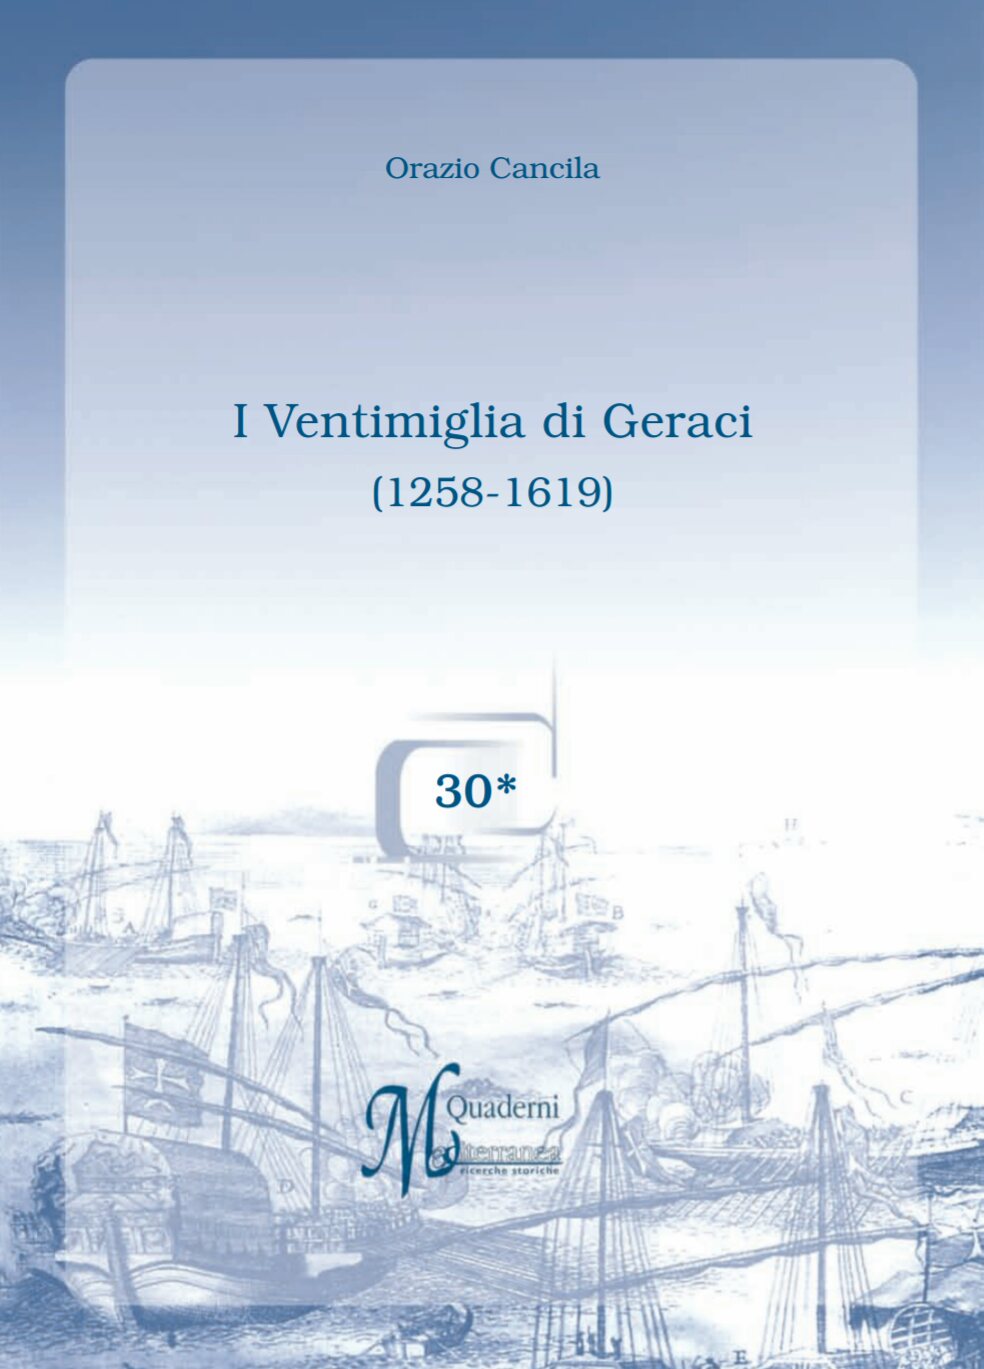 I Ventimiglia di Geraci (1258-1619), Quaderni "Mediterranea" ricerche storiche n.30, Orazio Cancila